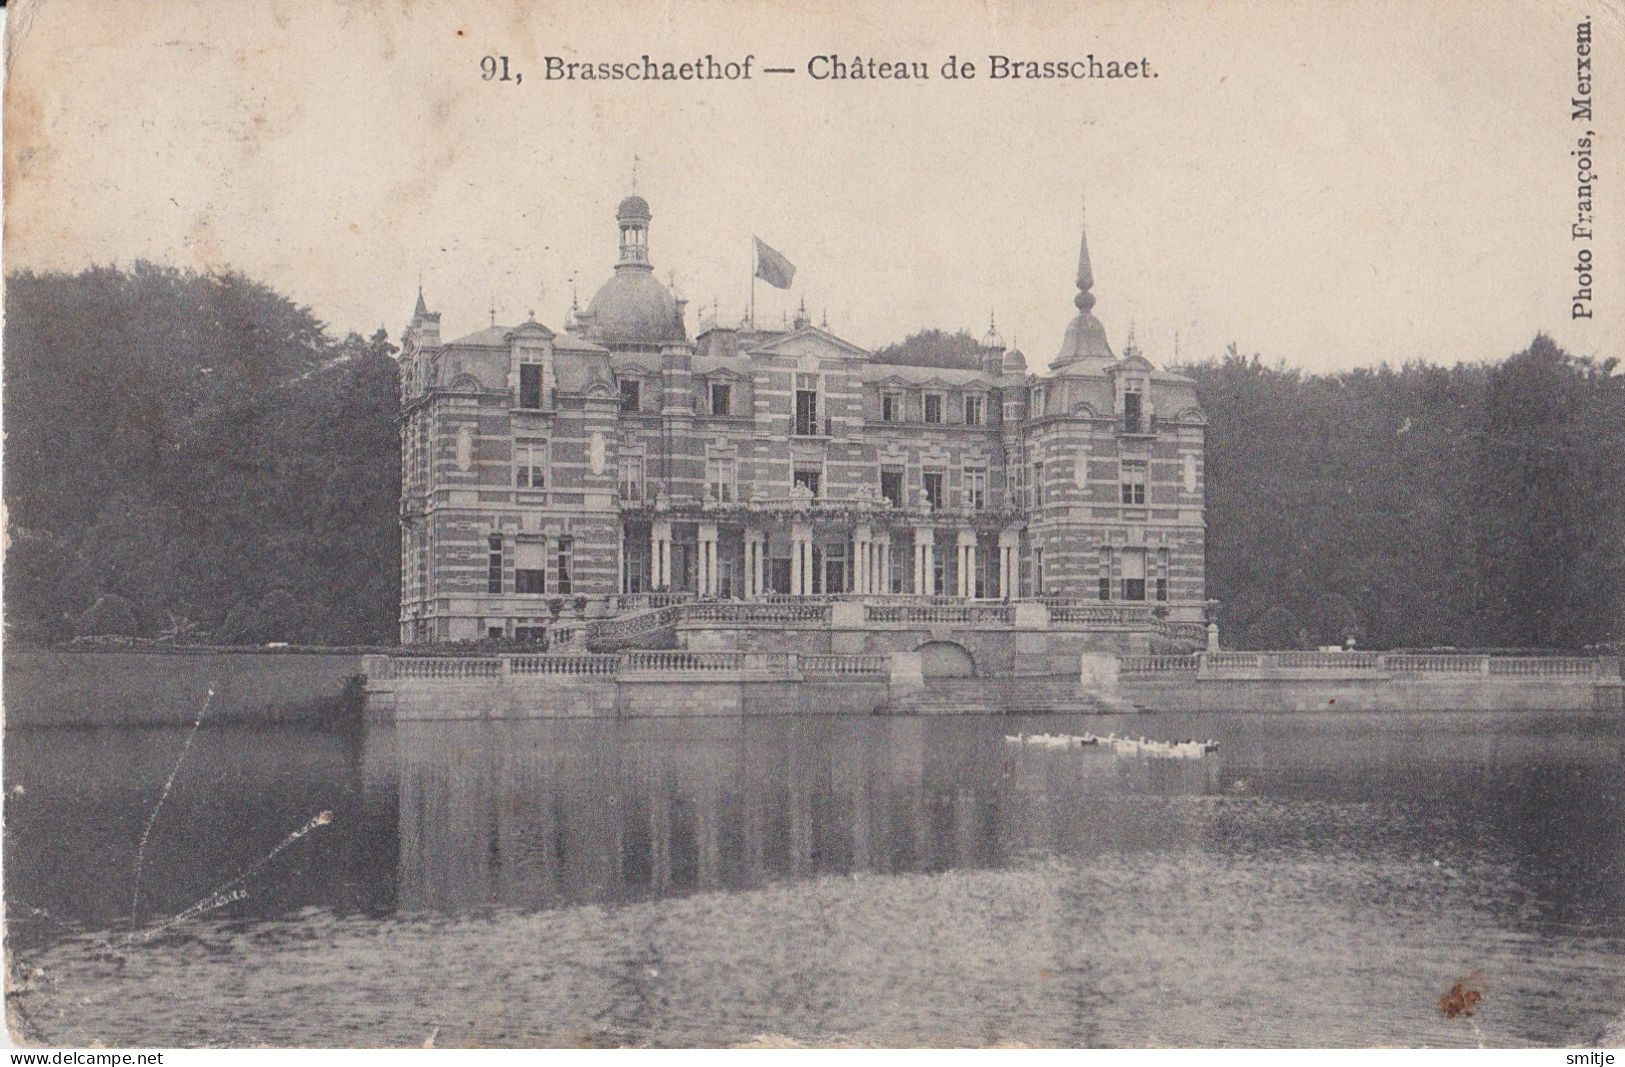 BRASSCHAAT 1912 BRASSCHAETHOF - CHATEAU DE BRASSCHAET - FRANCOIS MERKSEM - Brasschaat